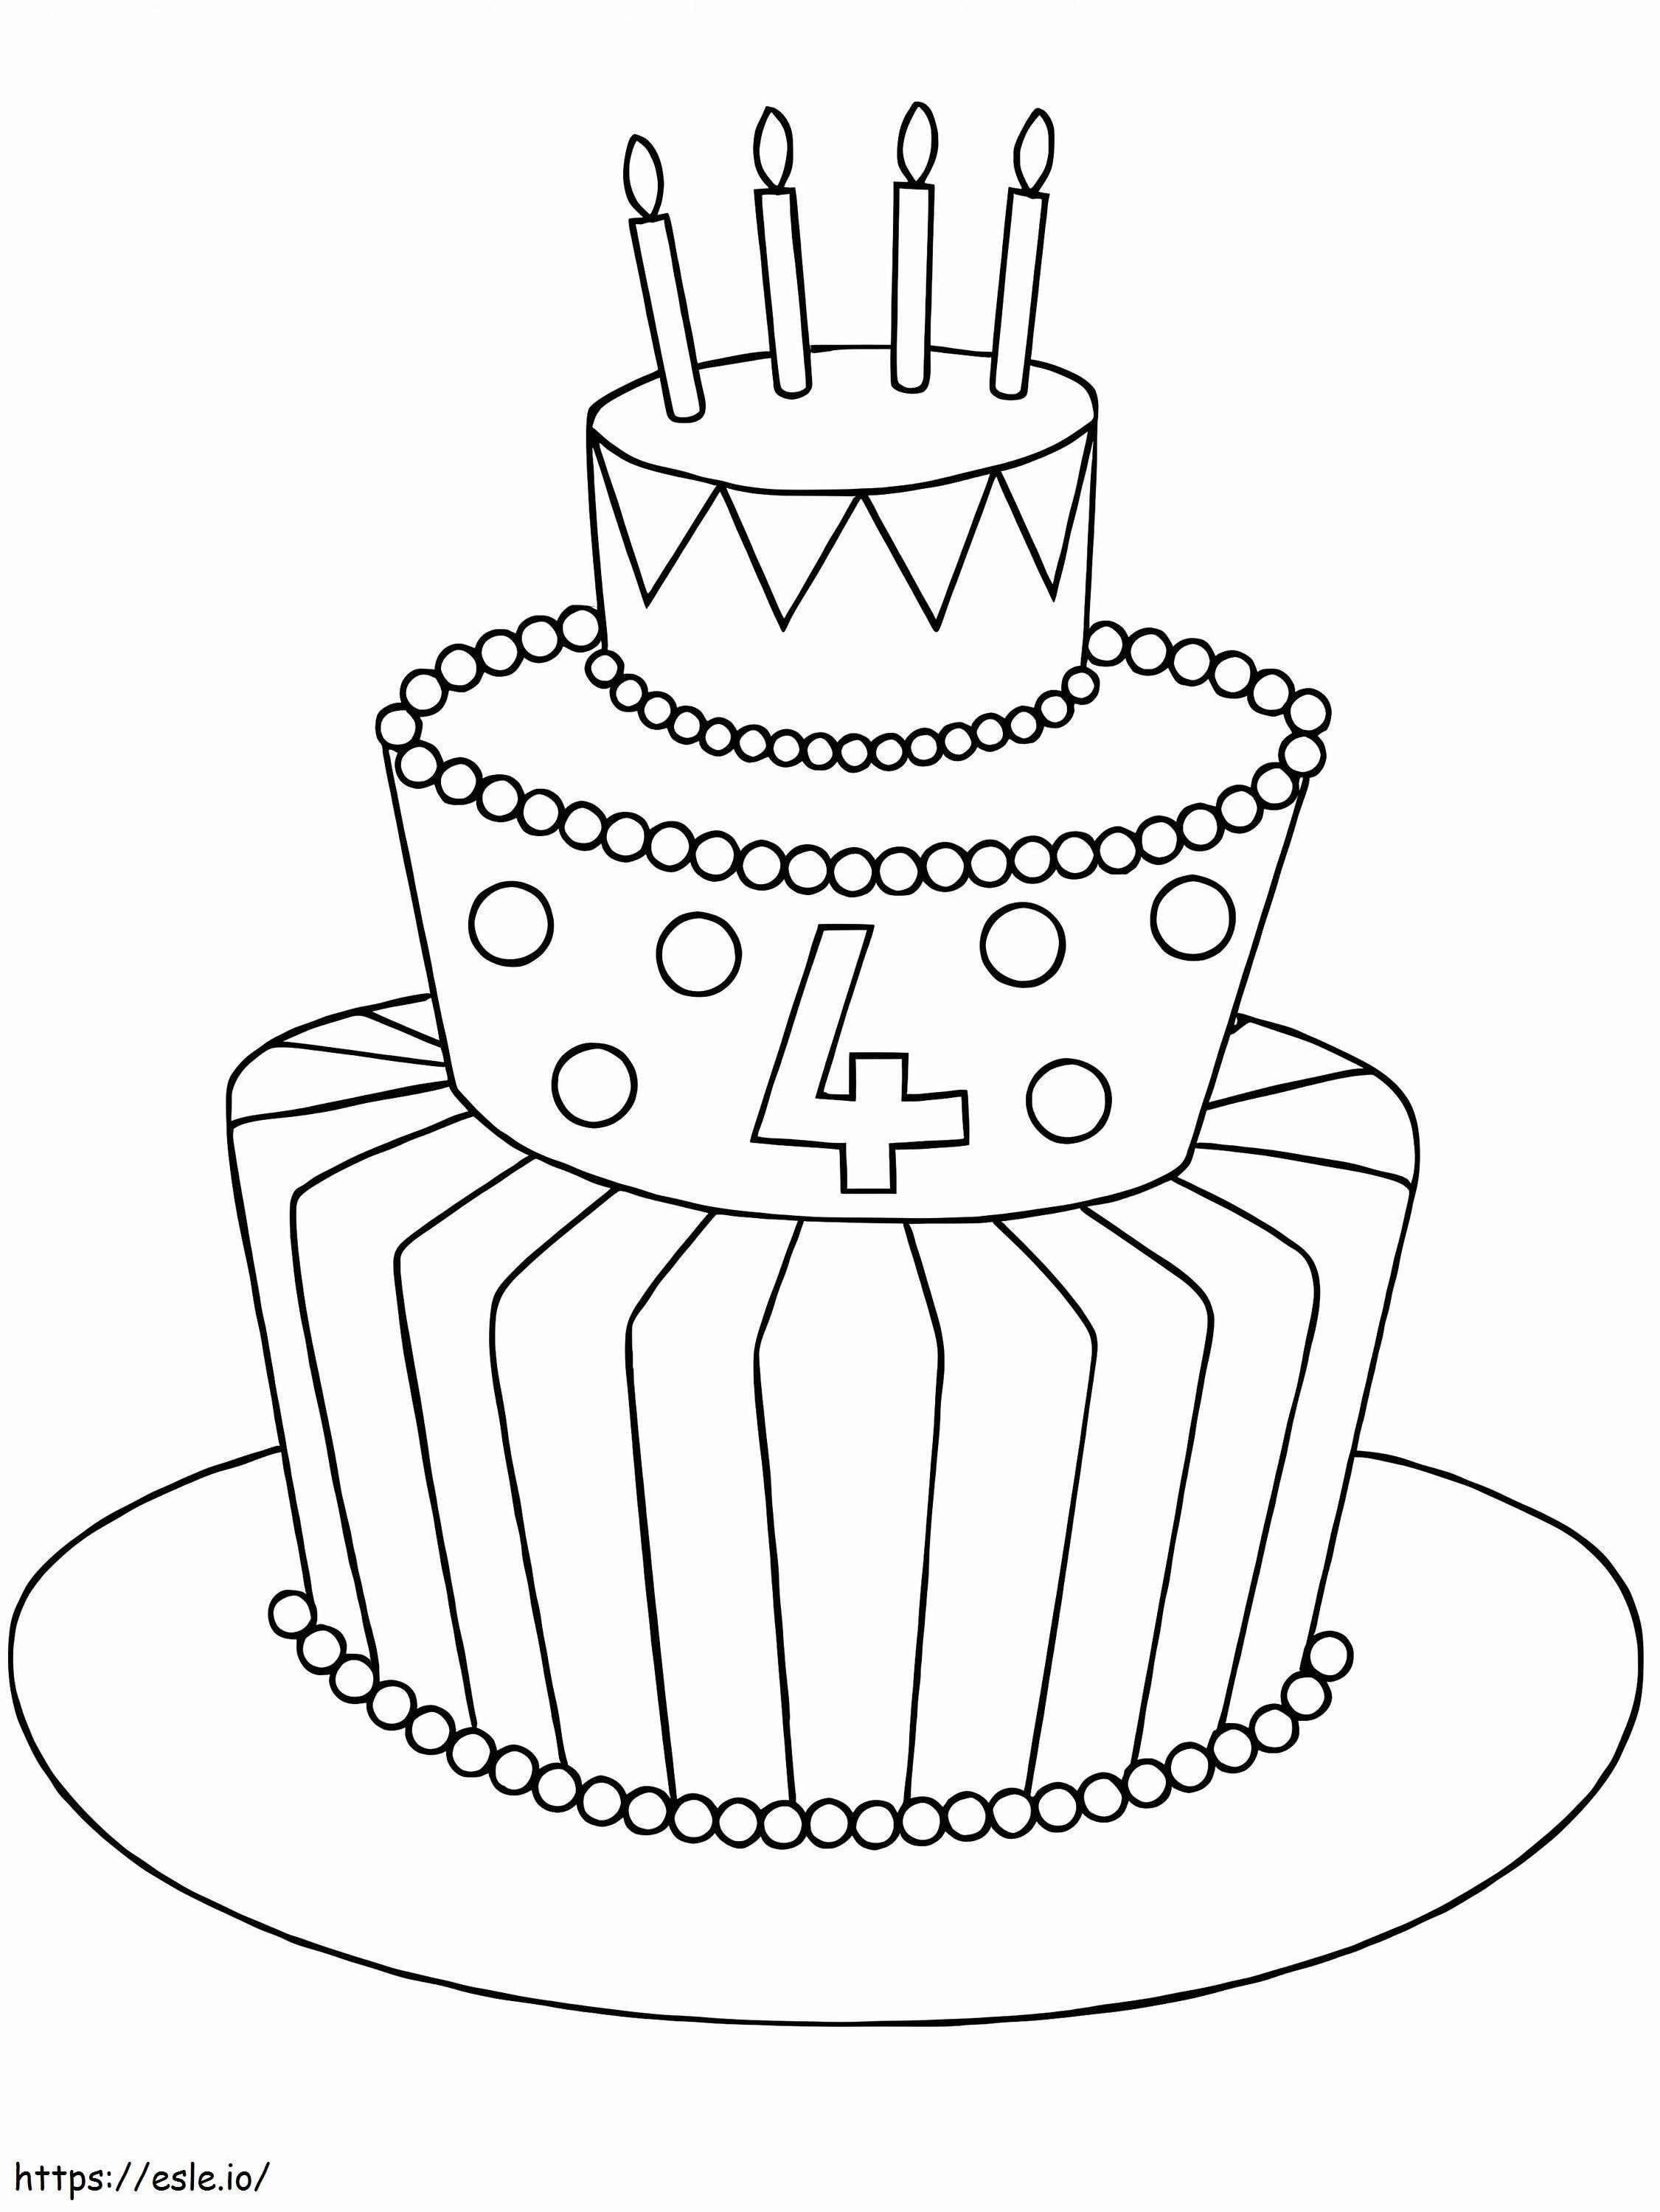 Wysoki tort urodzinowy kolorowanka